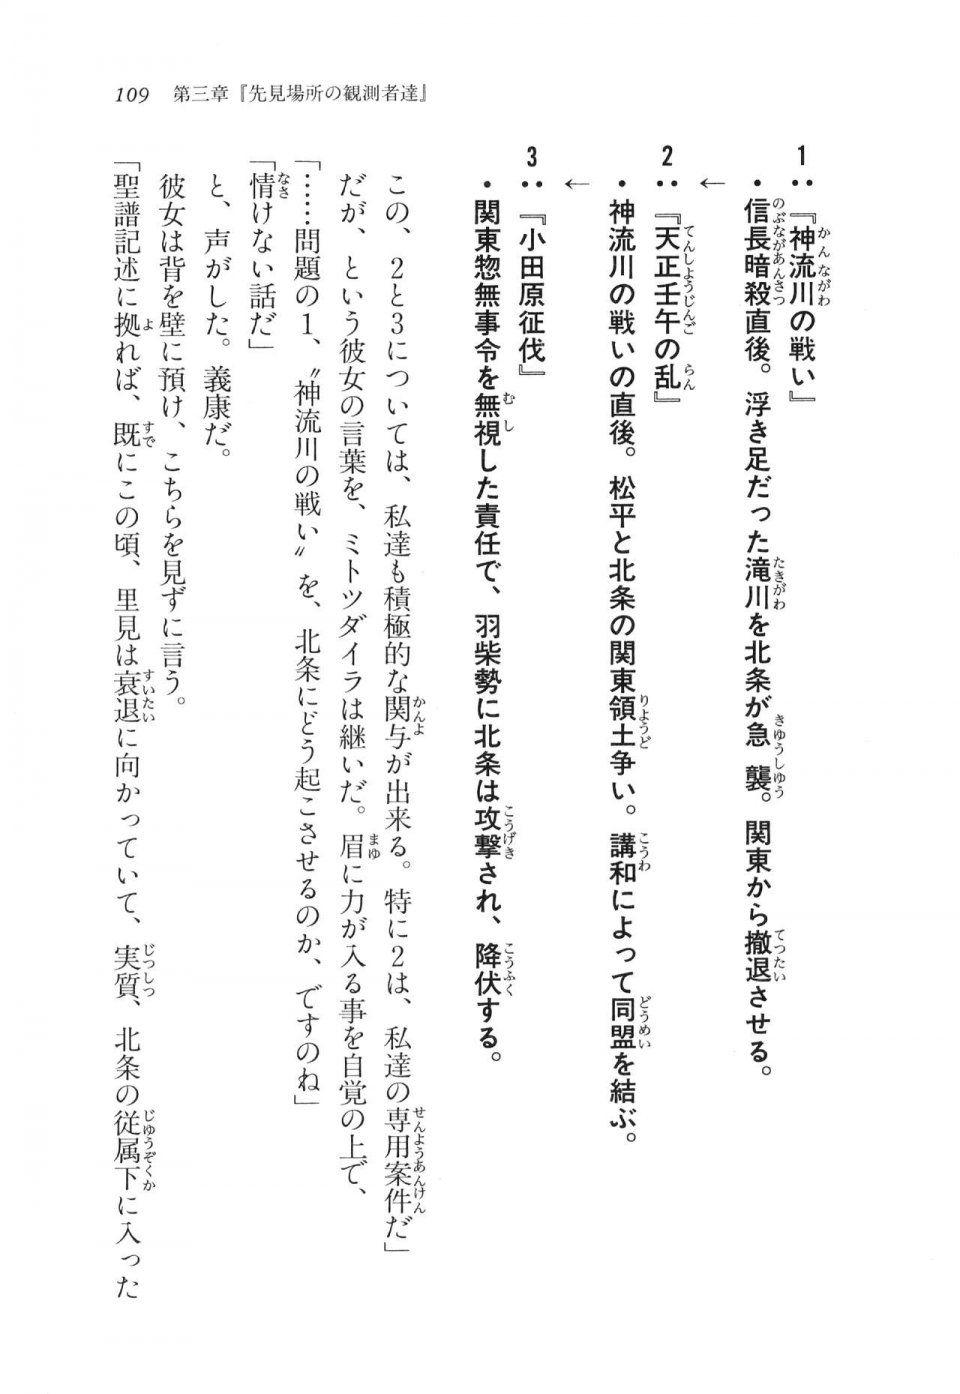 Kyoukai Senjou no Horizon LN Vol 11(5A) - Photo #109